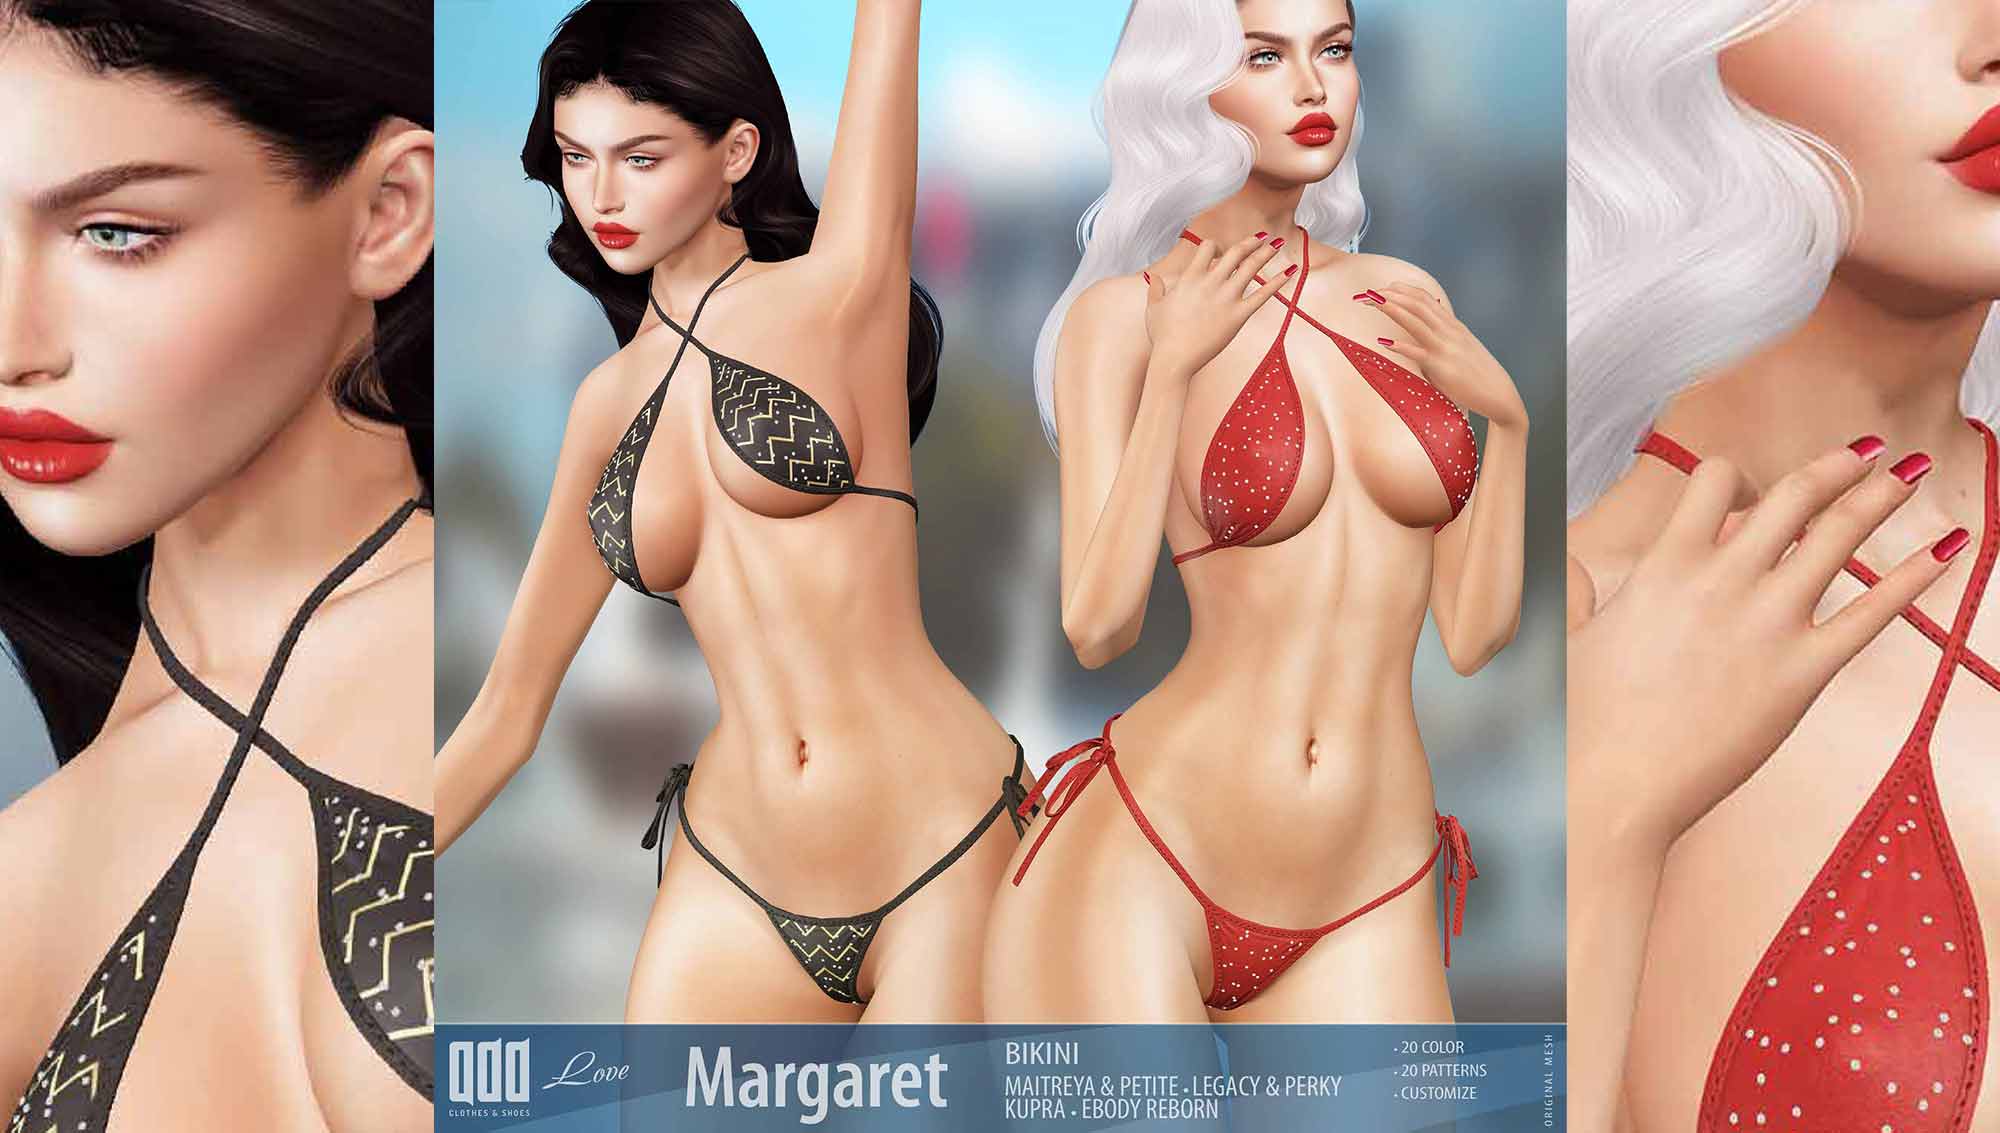 Margaret avery bikini